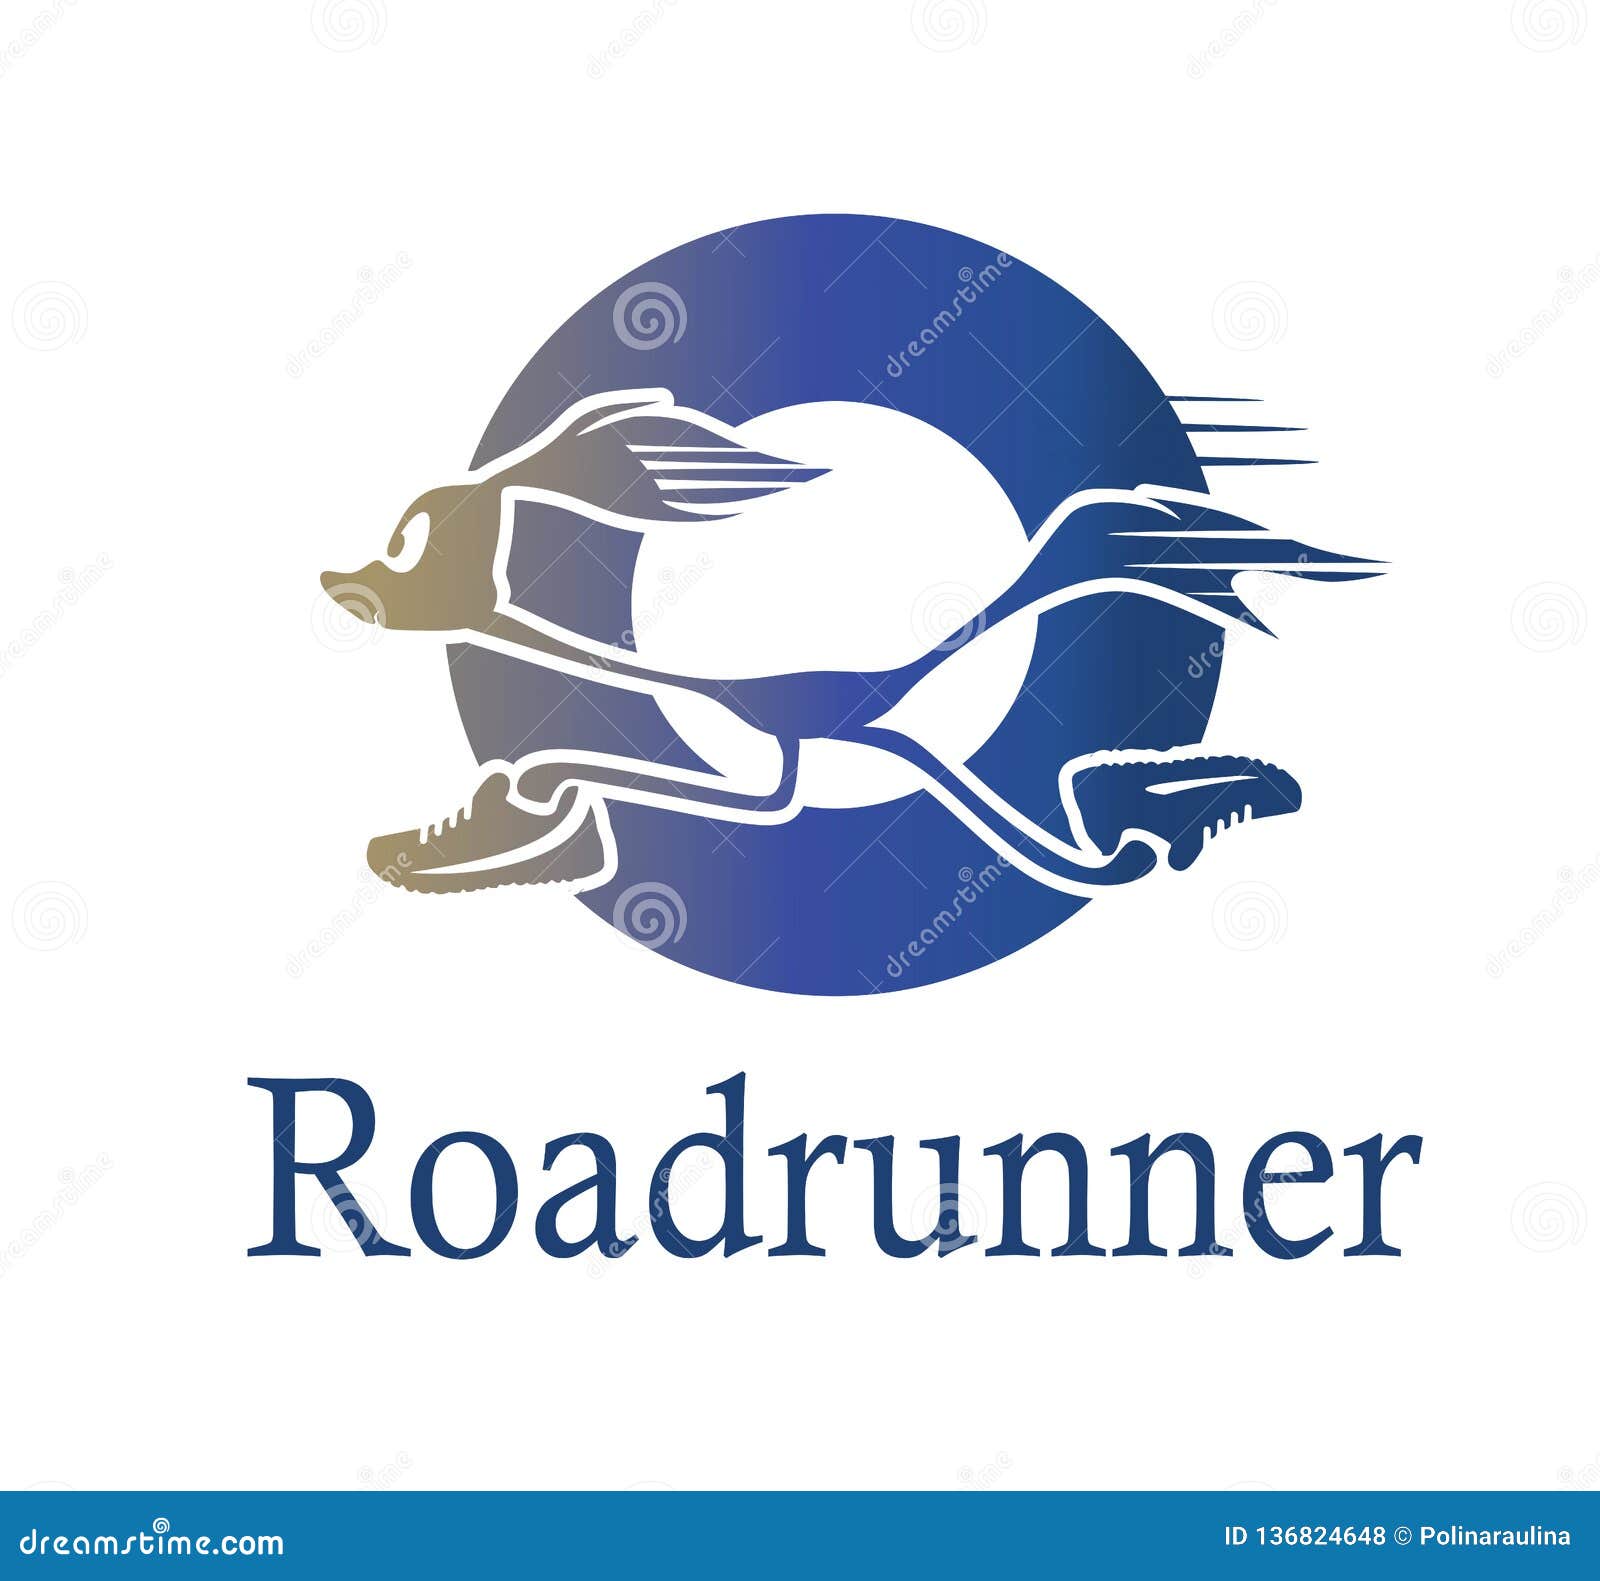 roadrunner logo in blue circle